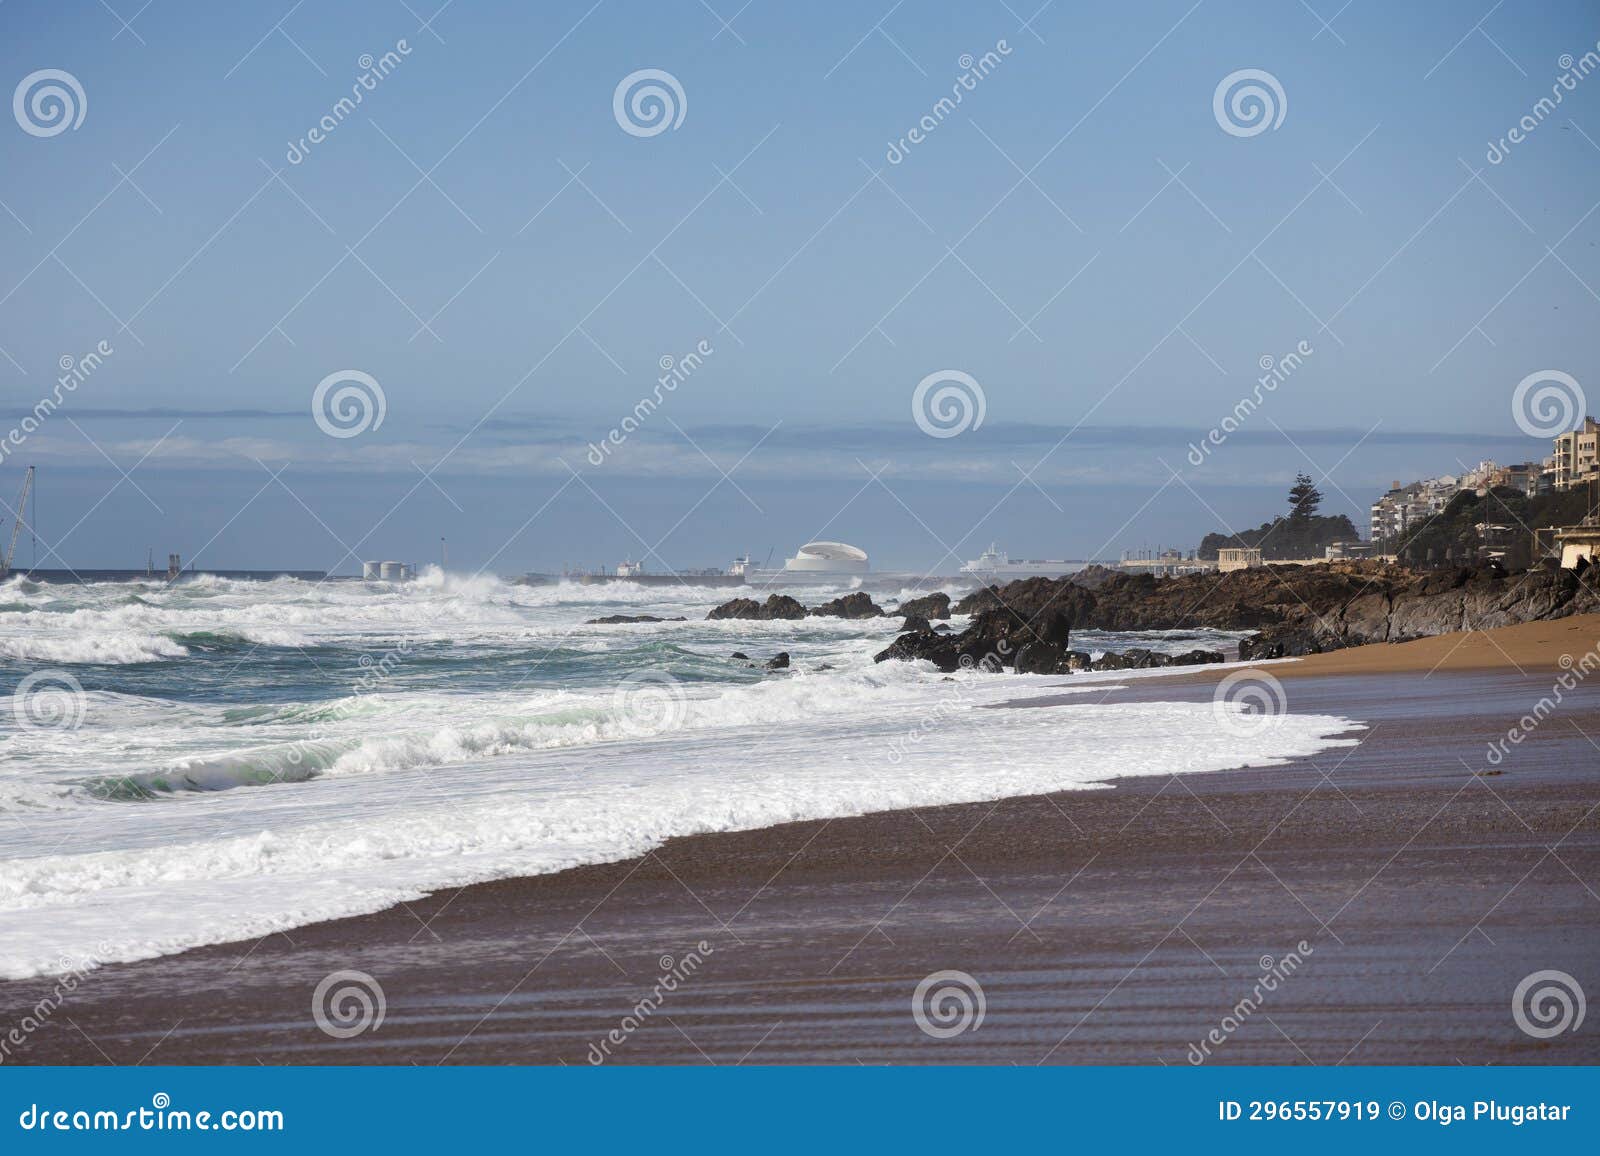 praia de carnero, sandy beach in porto with big waves of the ocean